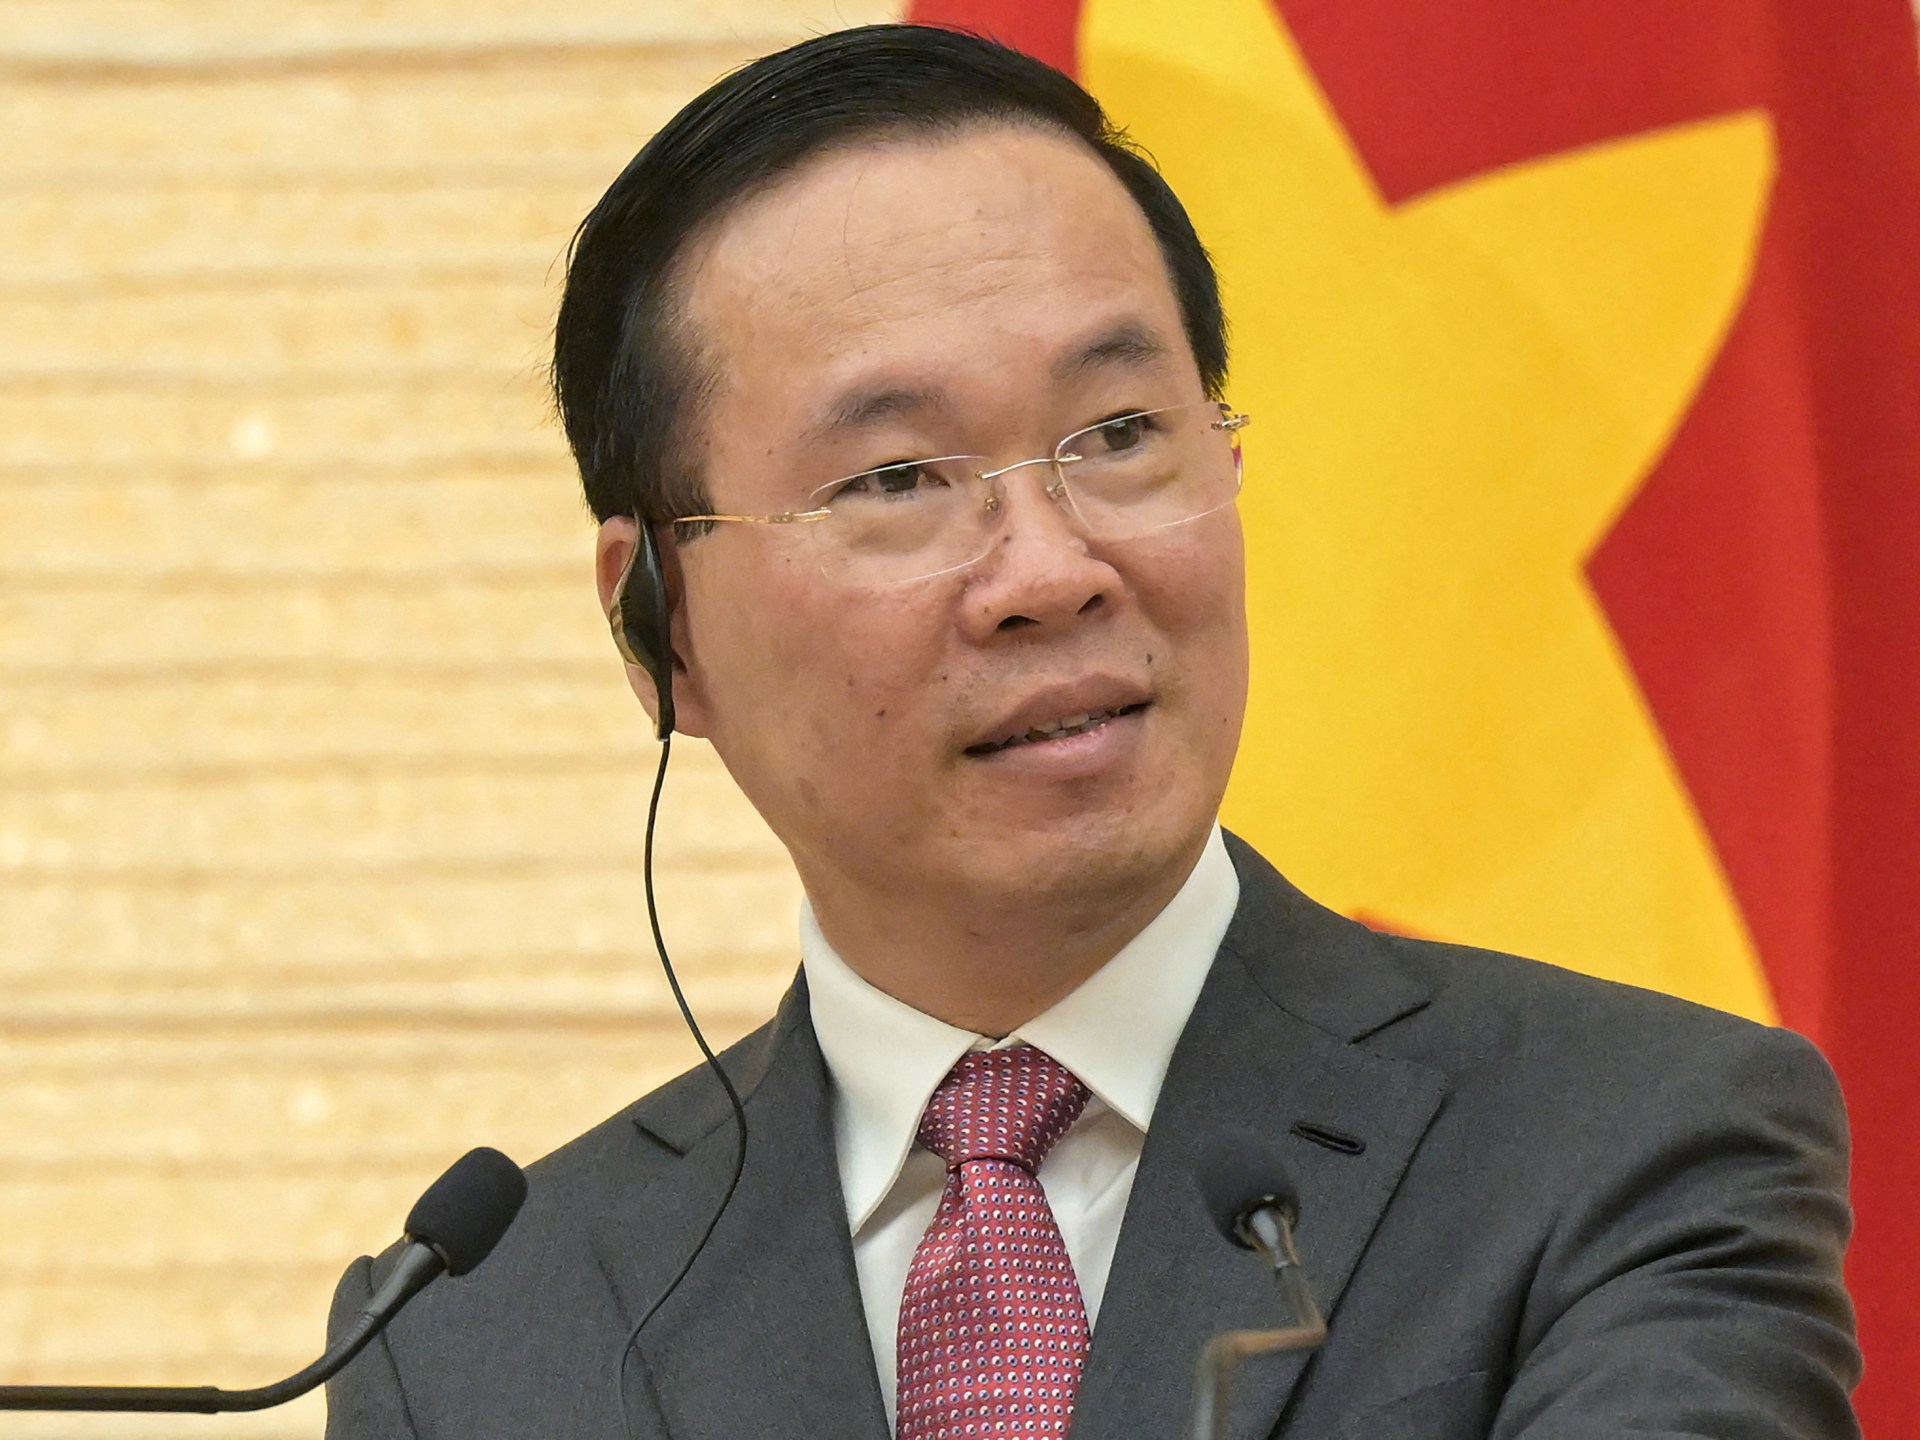 Wietnamski prezydent Vu Van Thuong rezygnuje w wyniku kampanii antykorupcyjnej |  Wiadomości polityczne